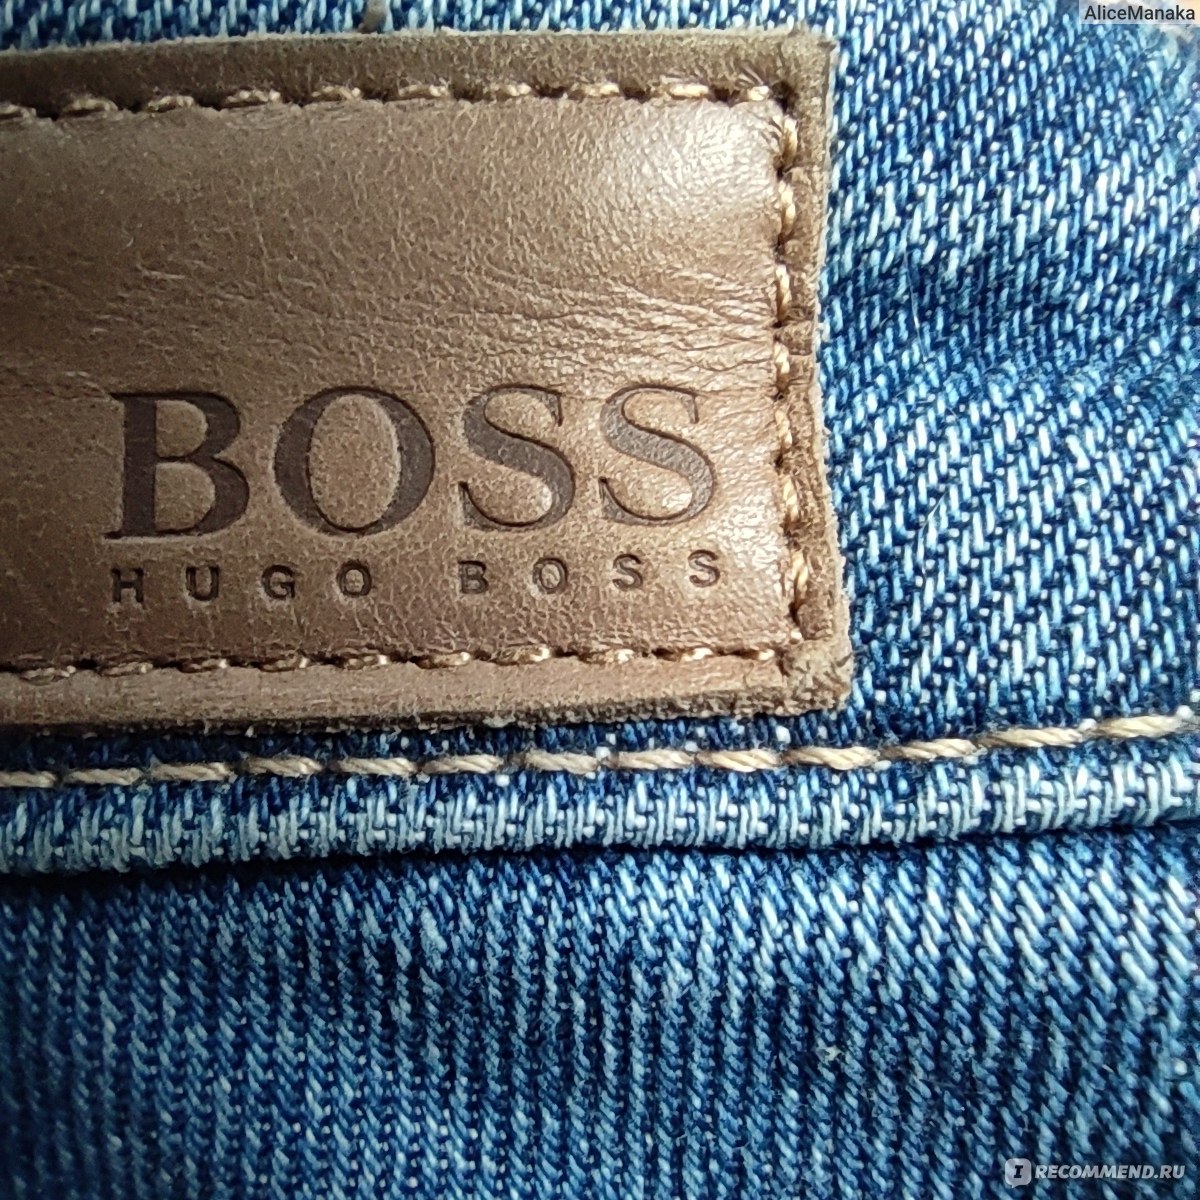 Джинсы хуго босс. O6212 Jeans Hugo Boss Montana.